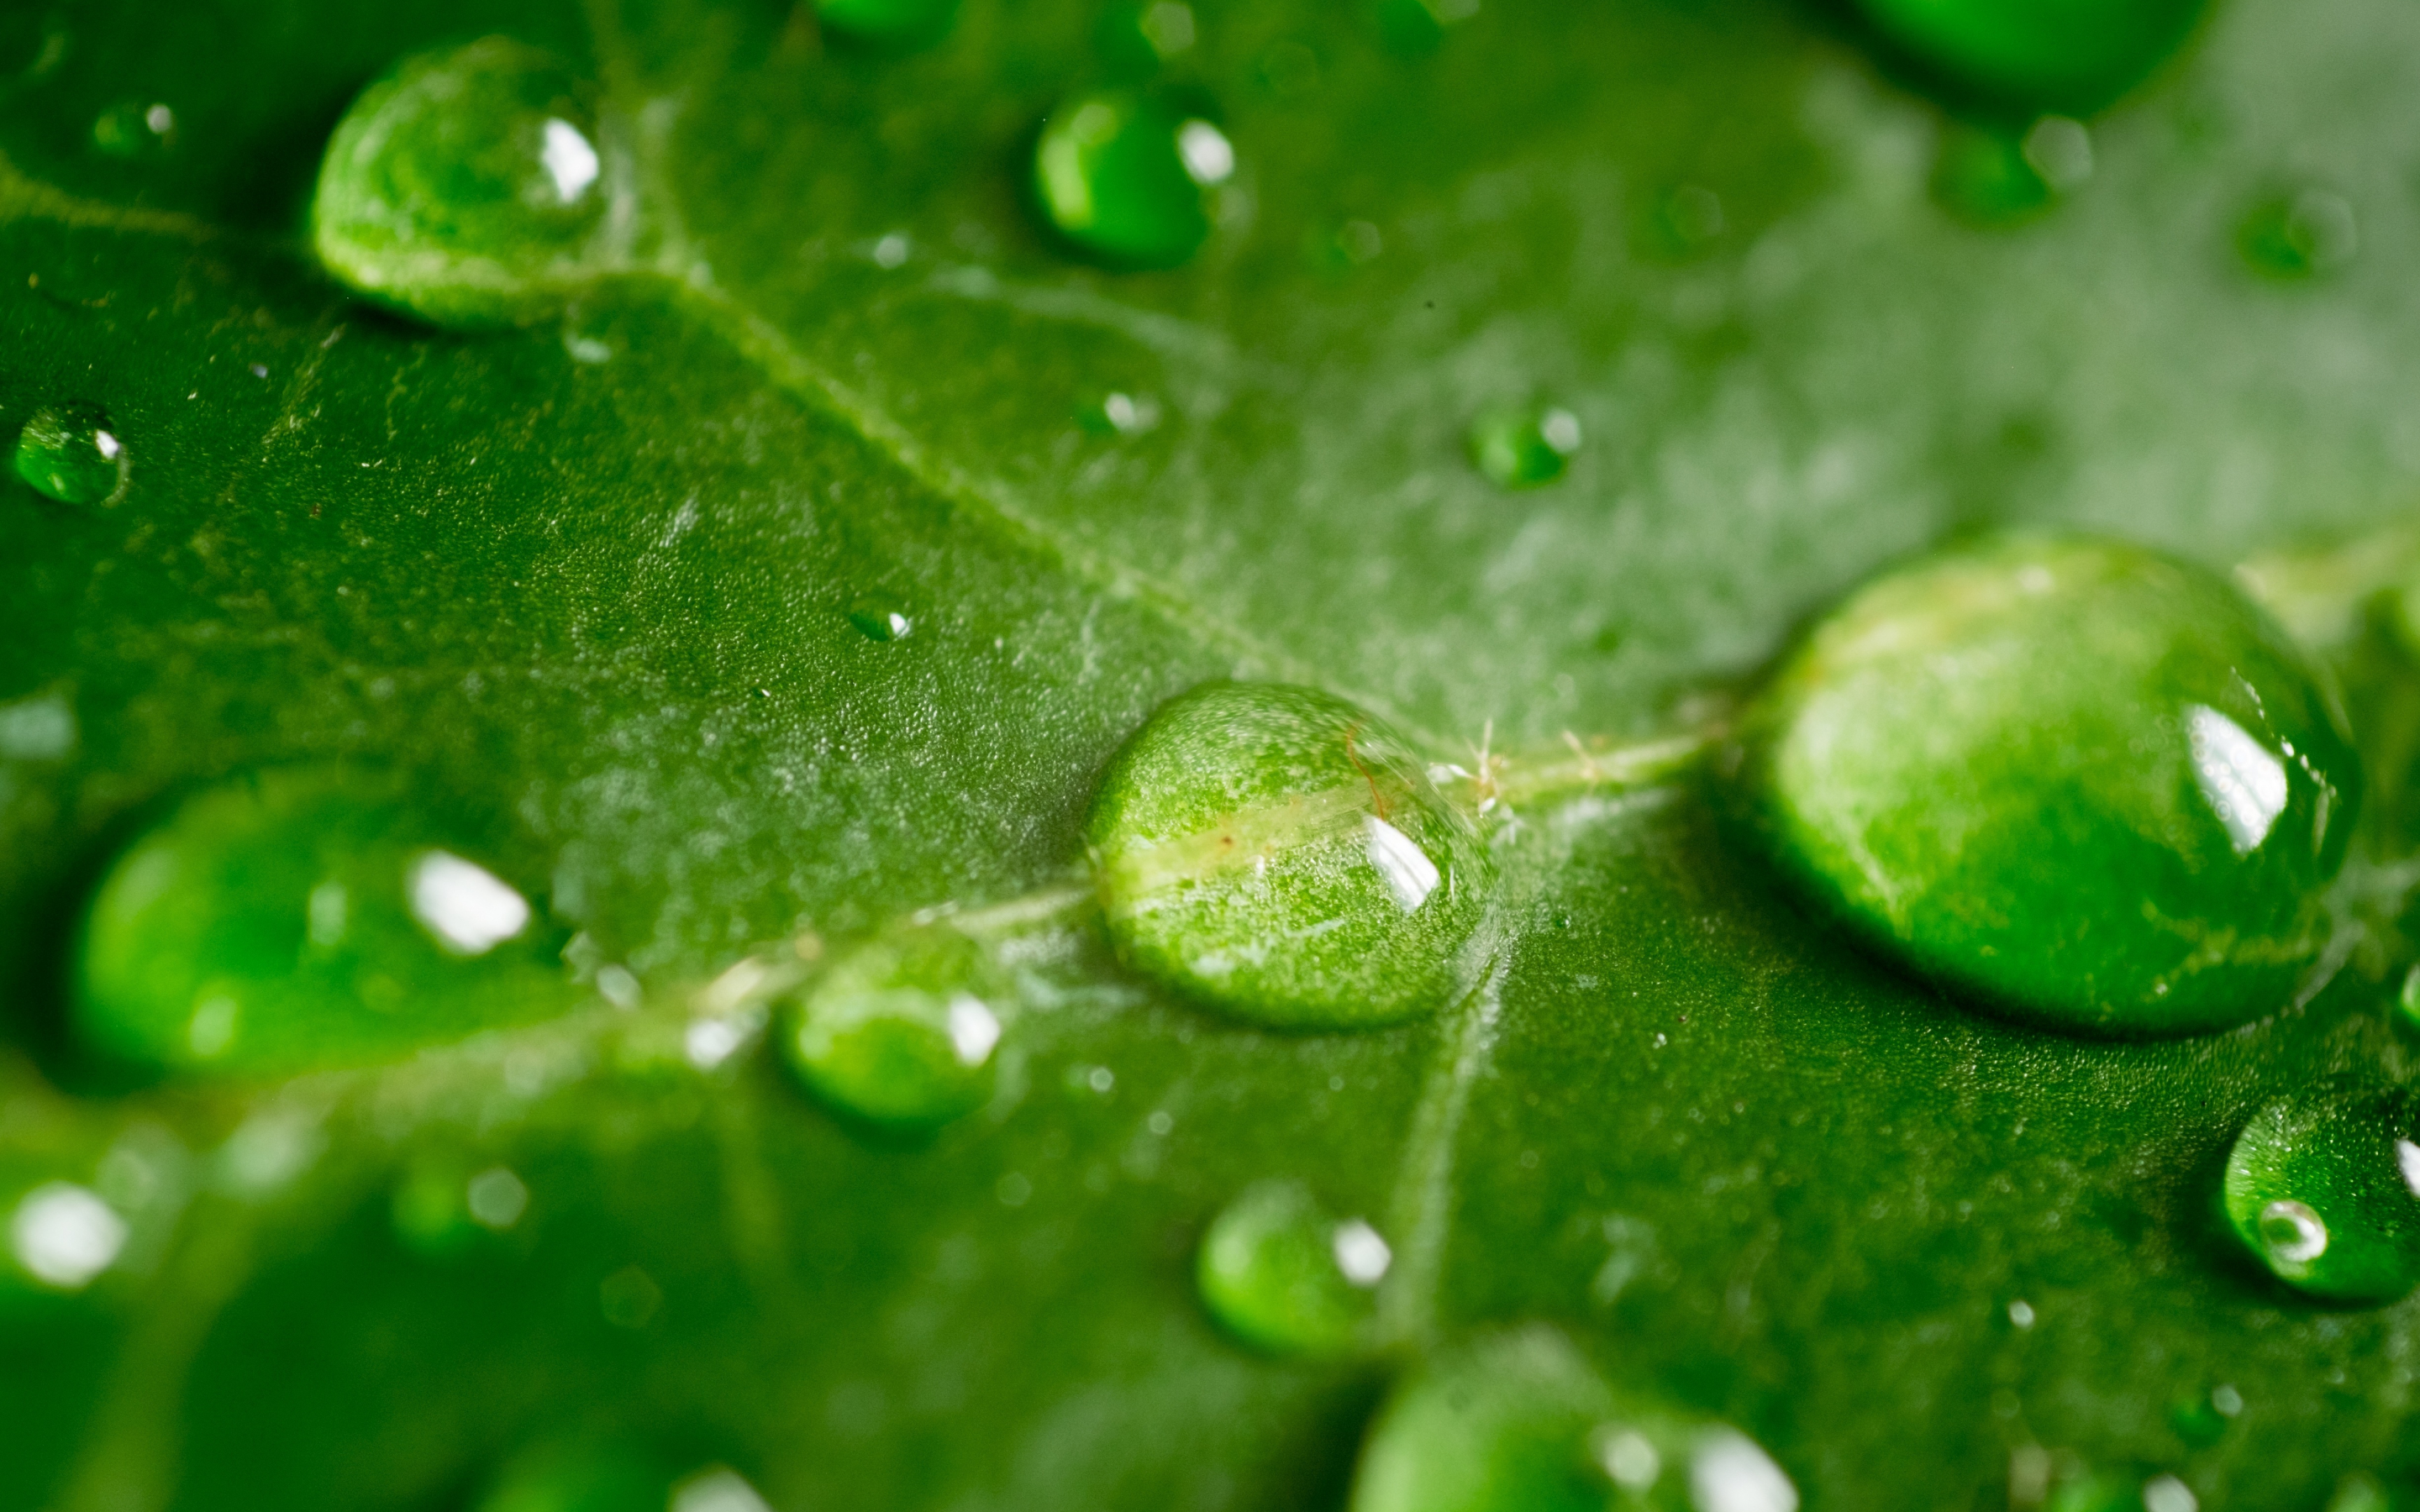 Leaf, green, drops, 2880x1800 wallpaper